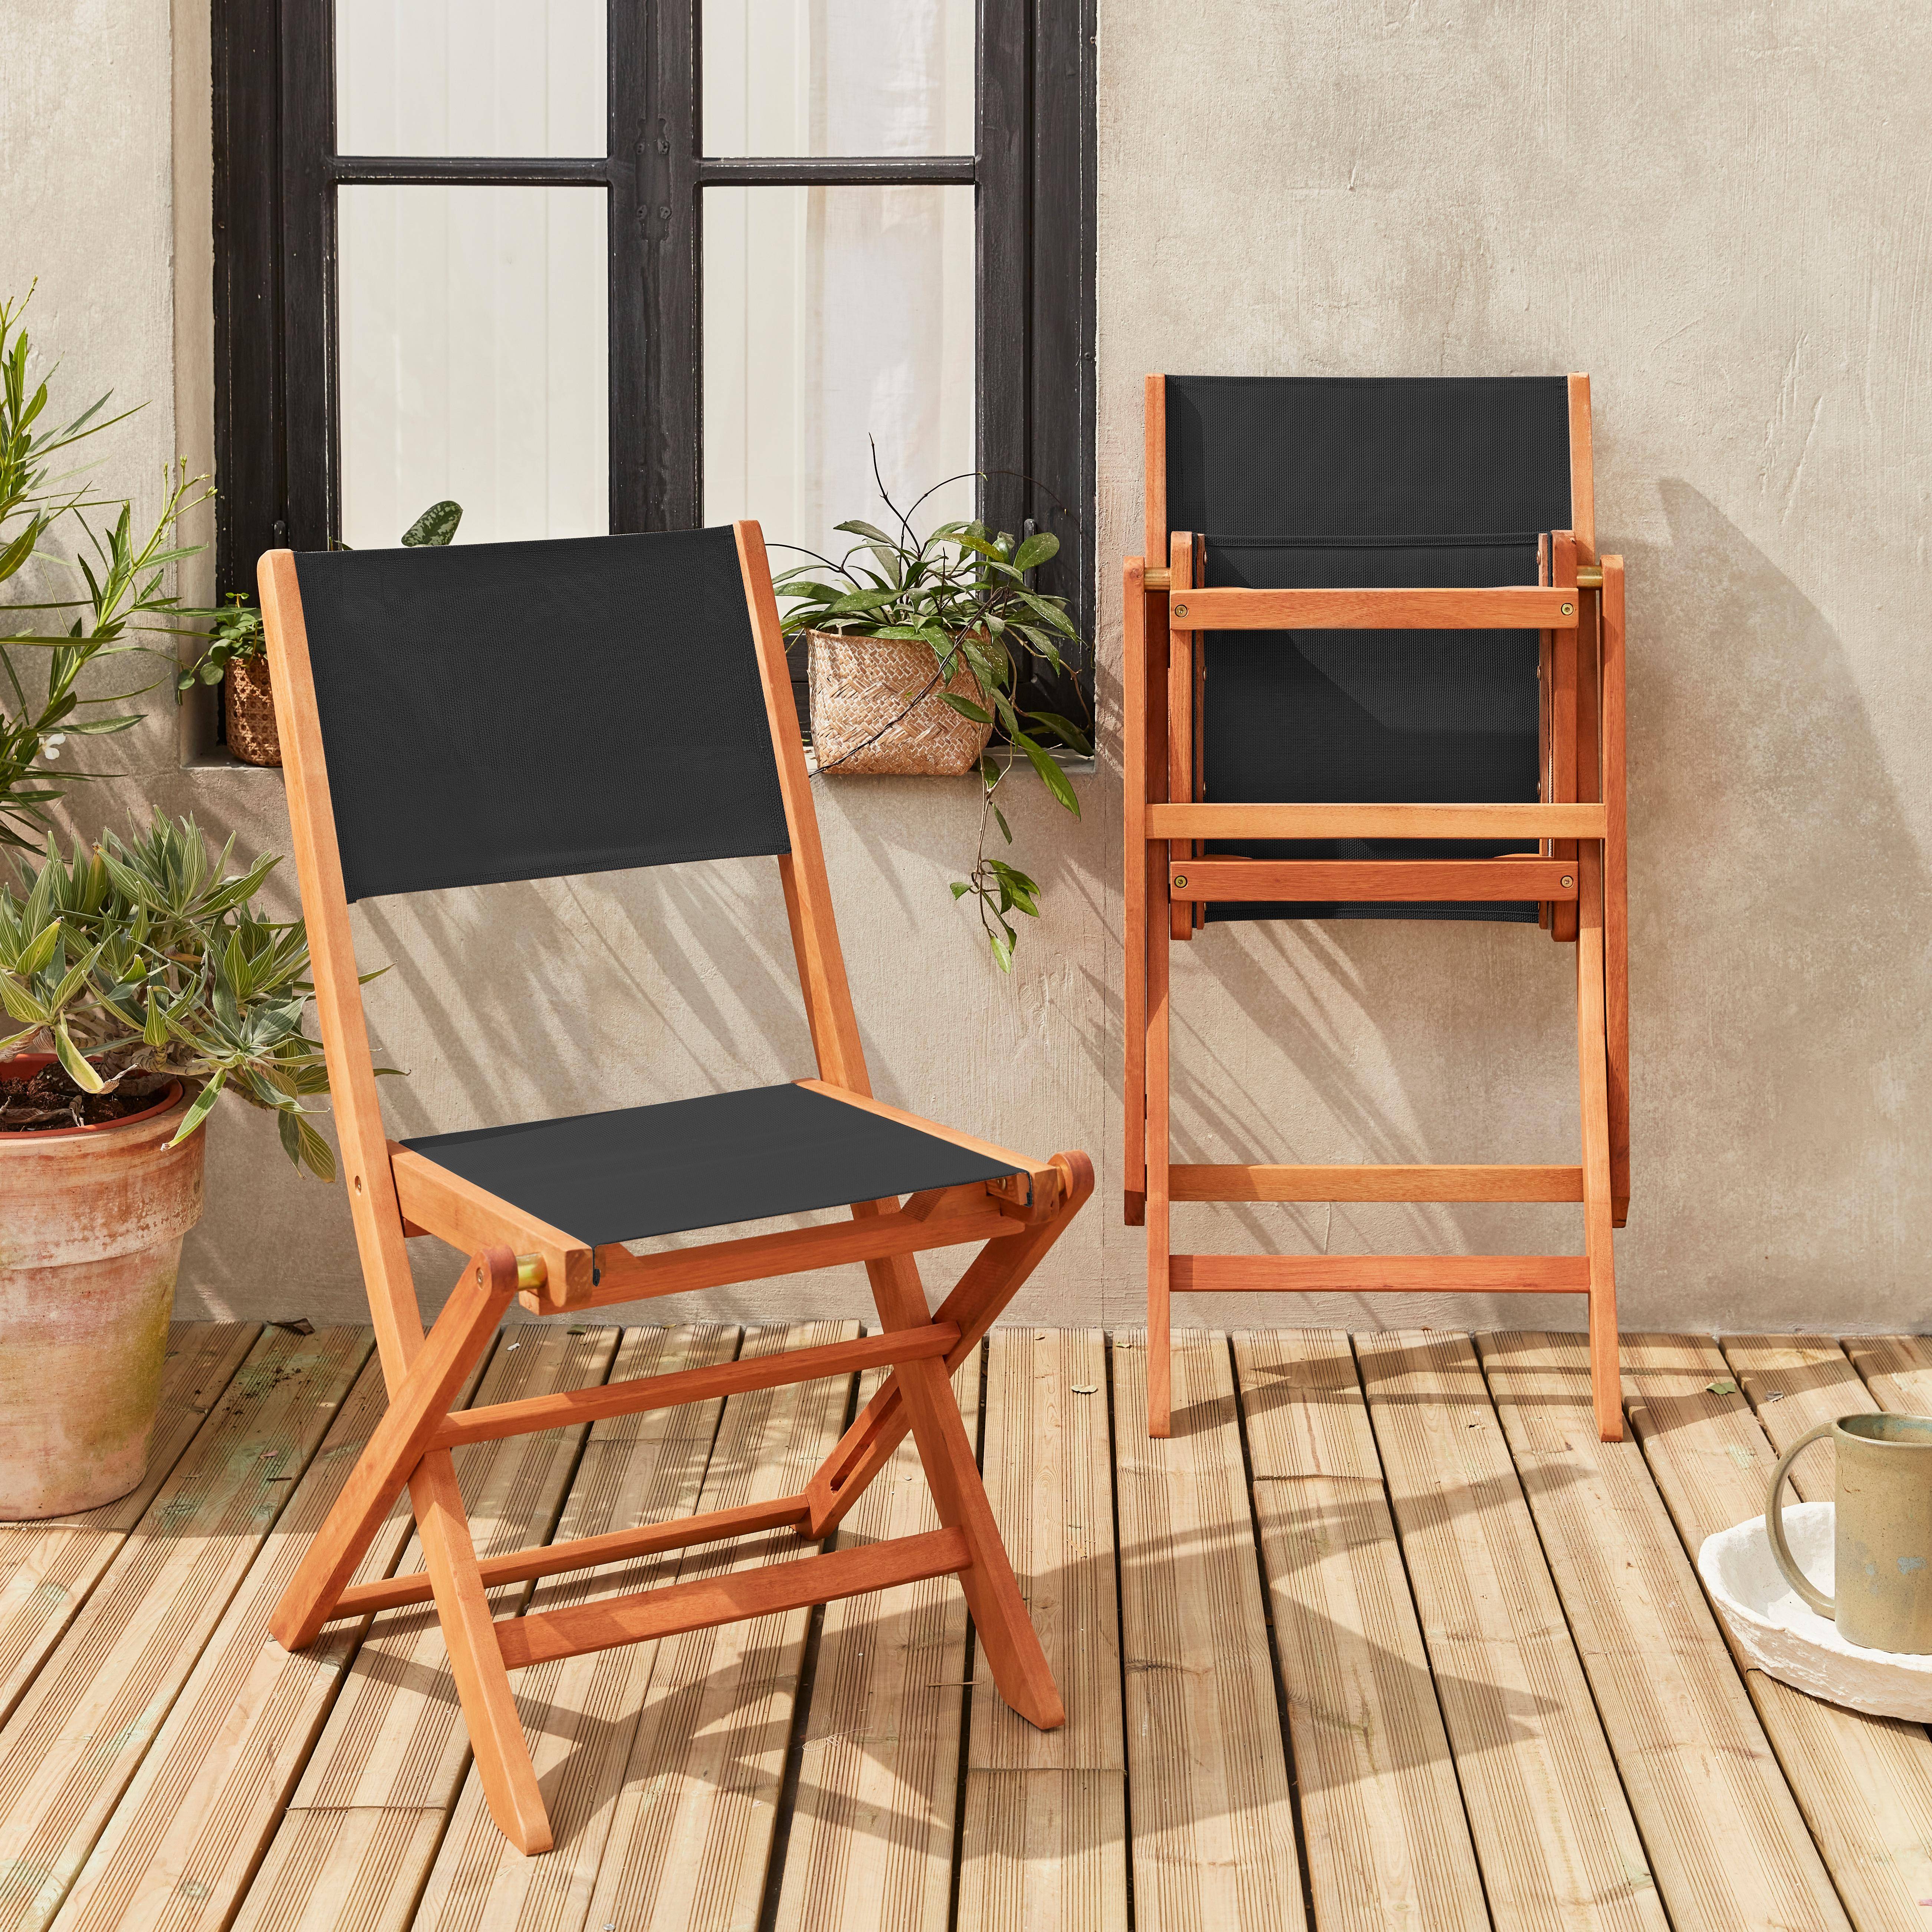 Credencial amplio Moral Lote de 2 sillas plegables de madera de Eucalipto FSC y textileno